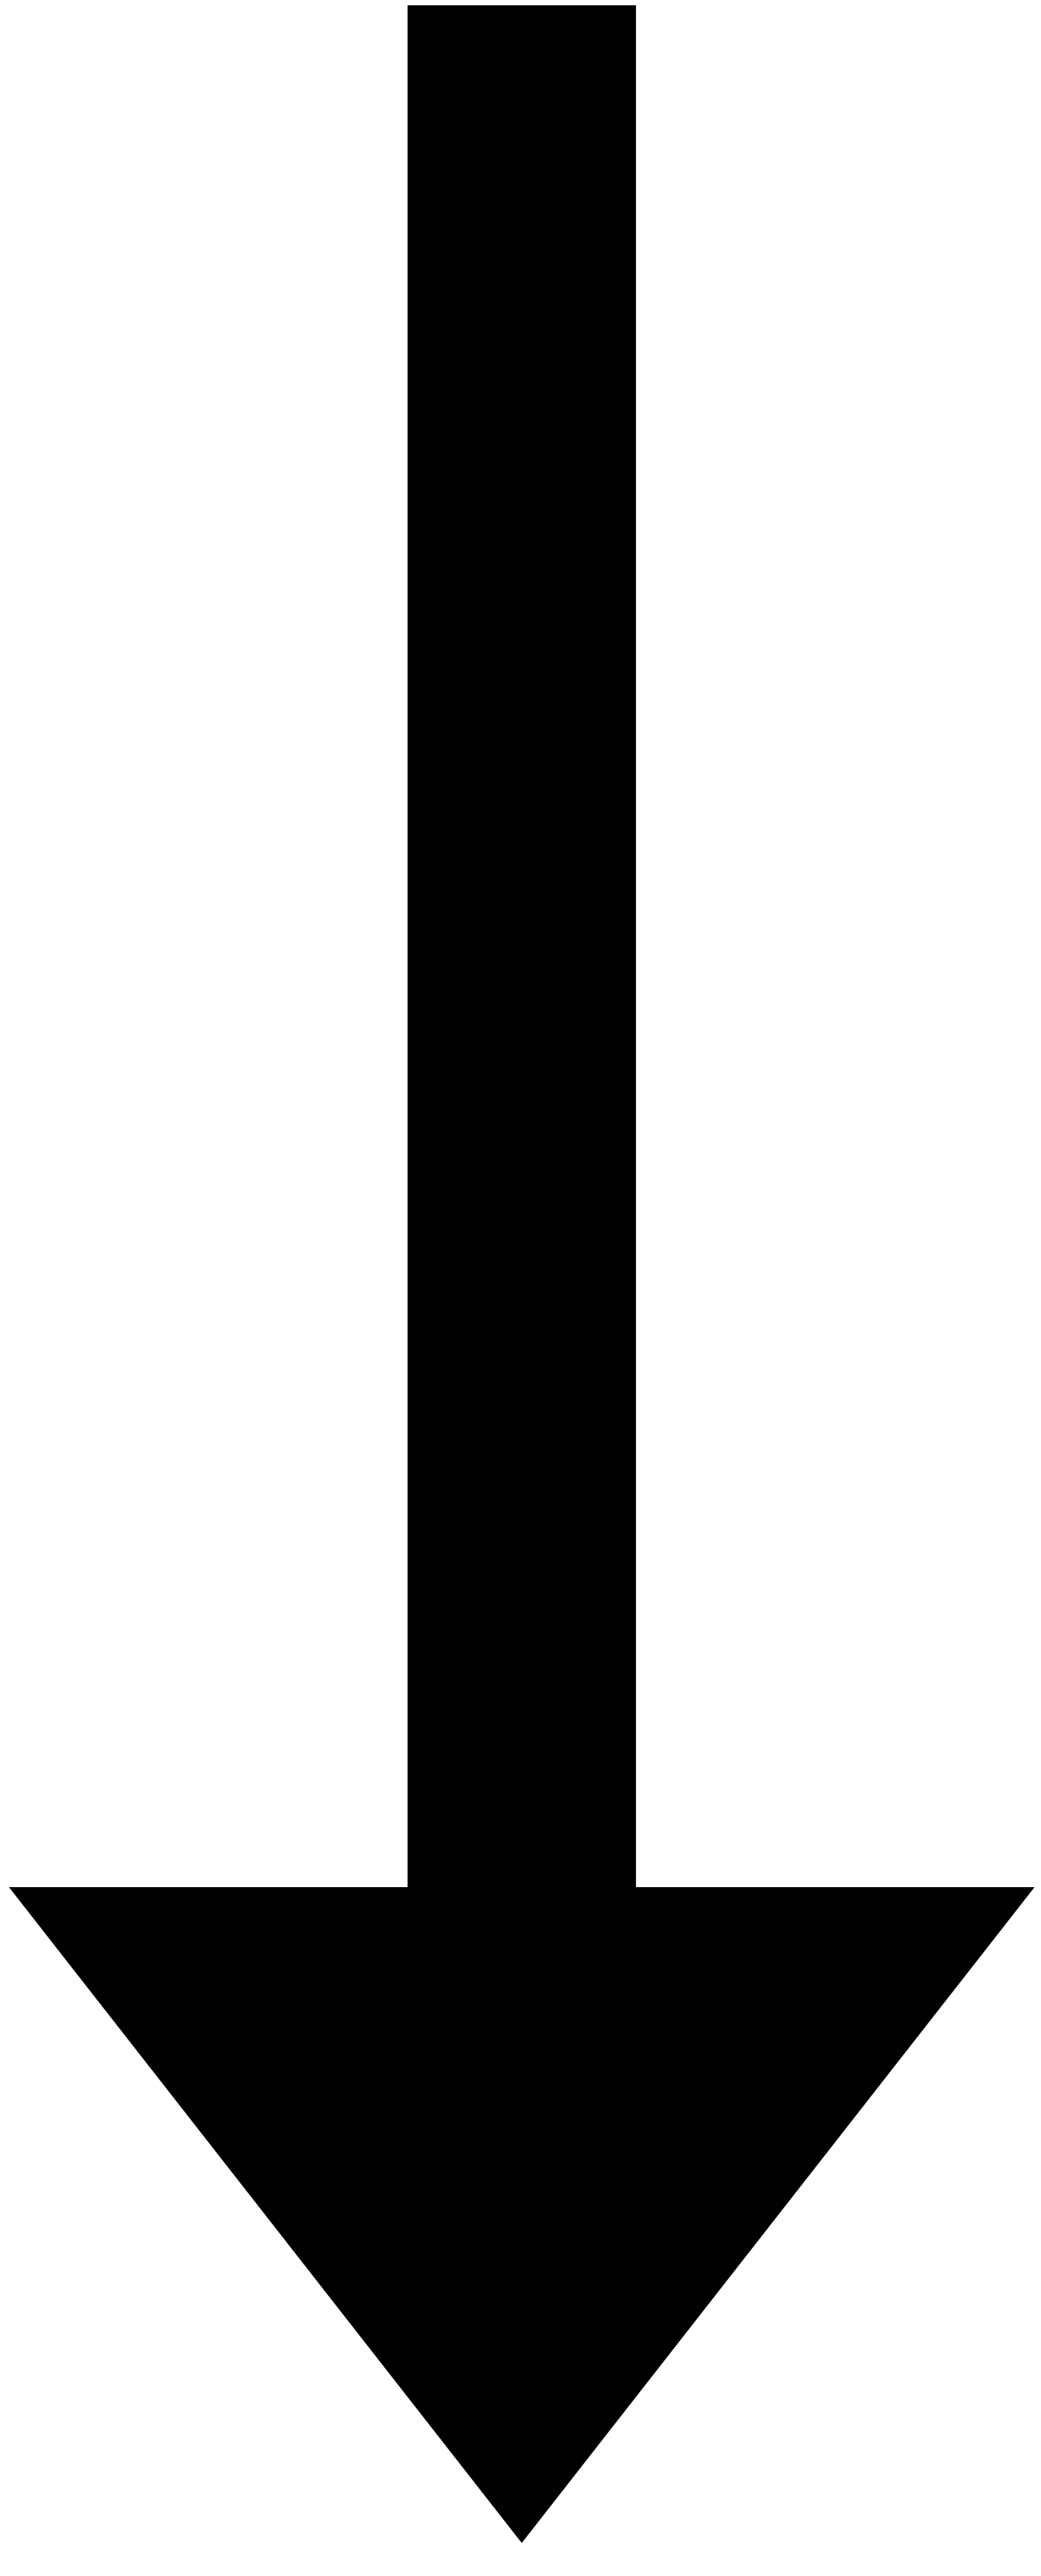 copy and paste arrow symbol